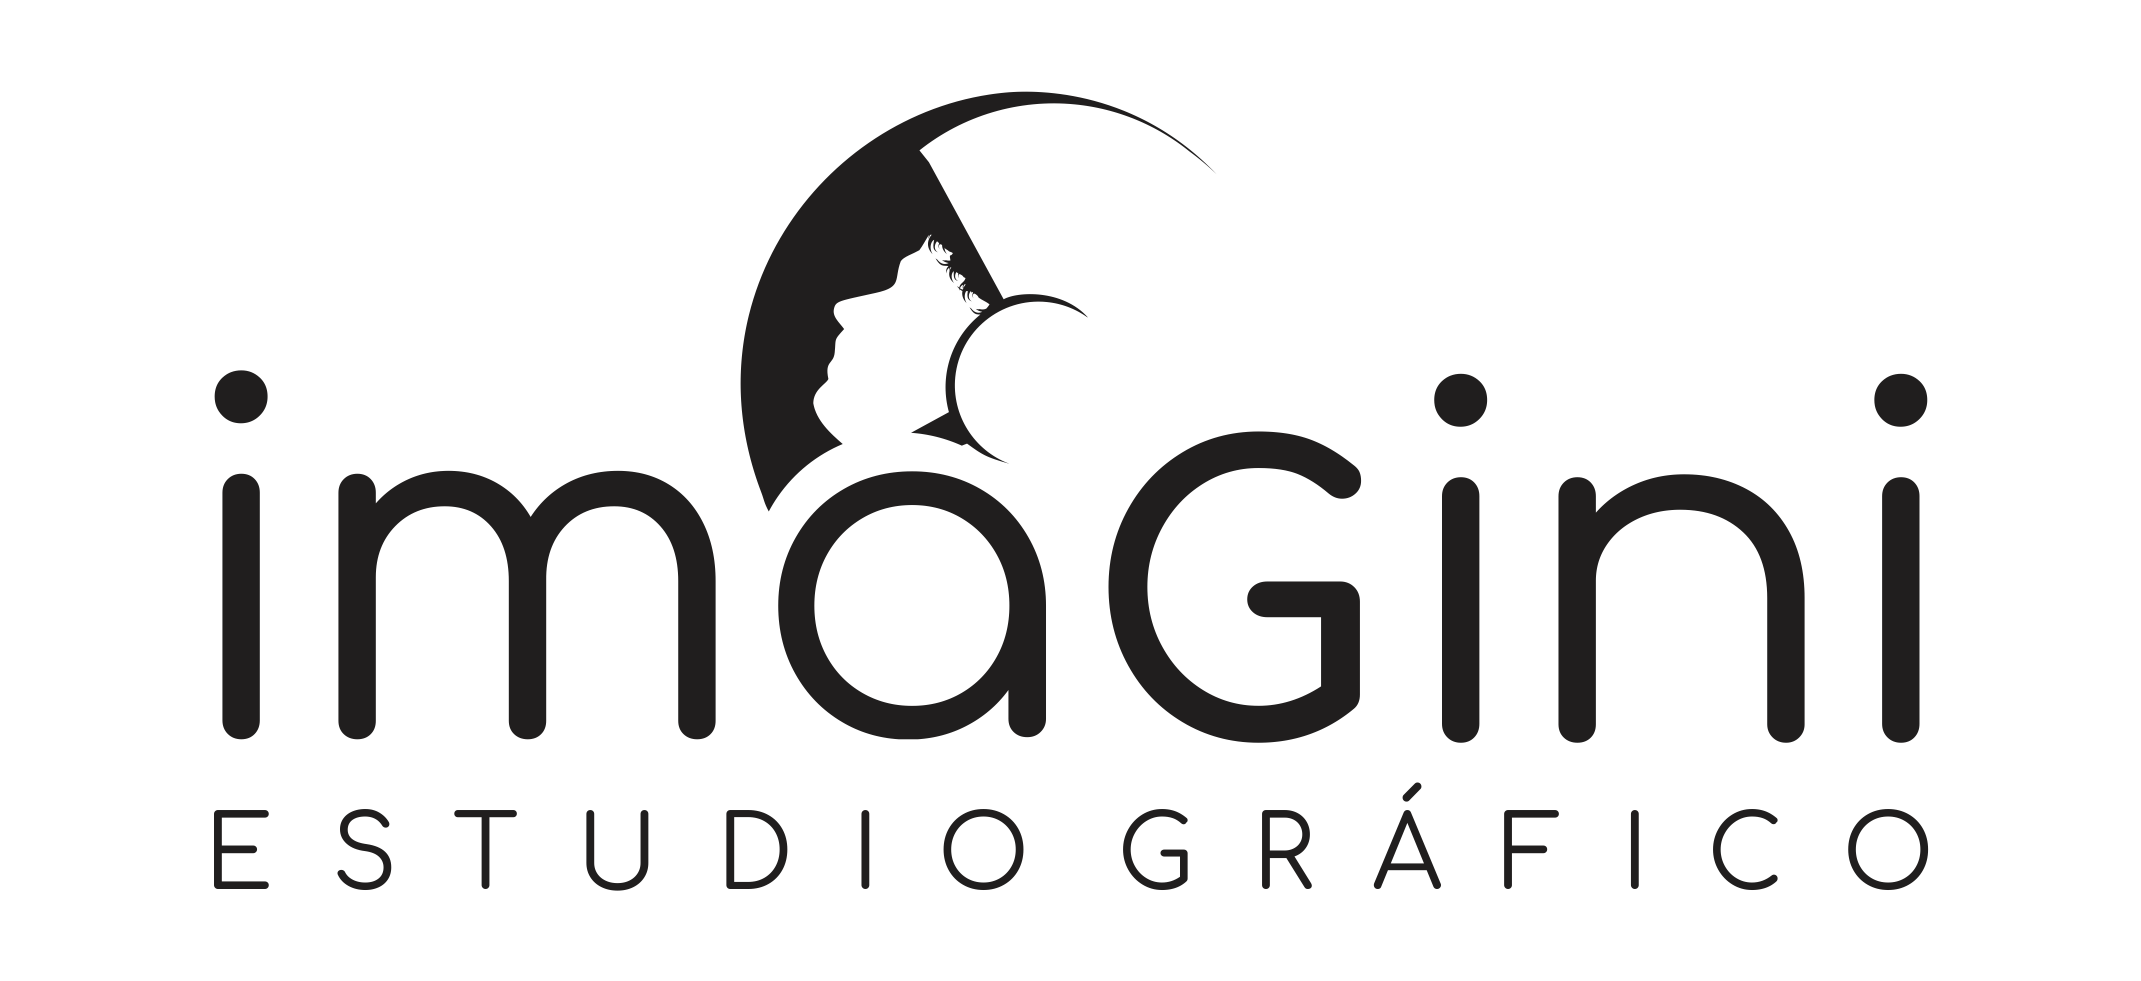 Logotipo de imagini estudio grafico, en color negro formato png